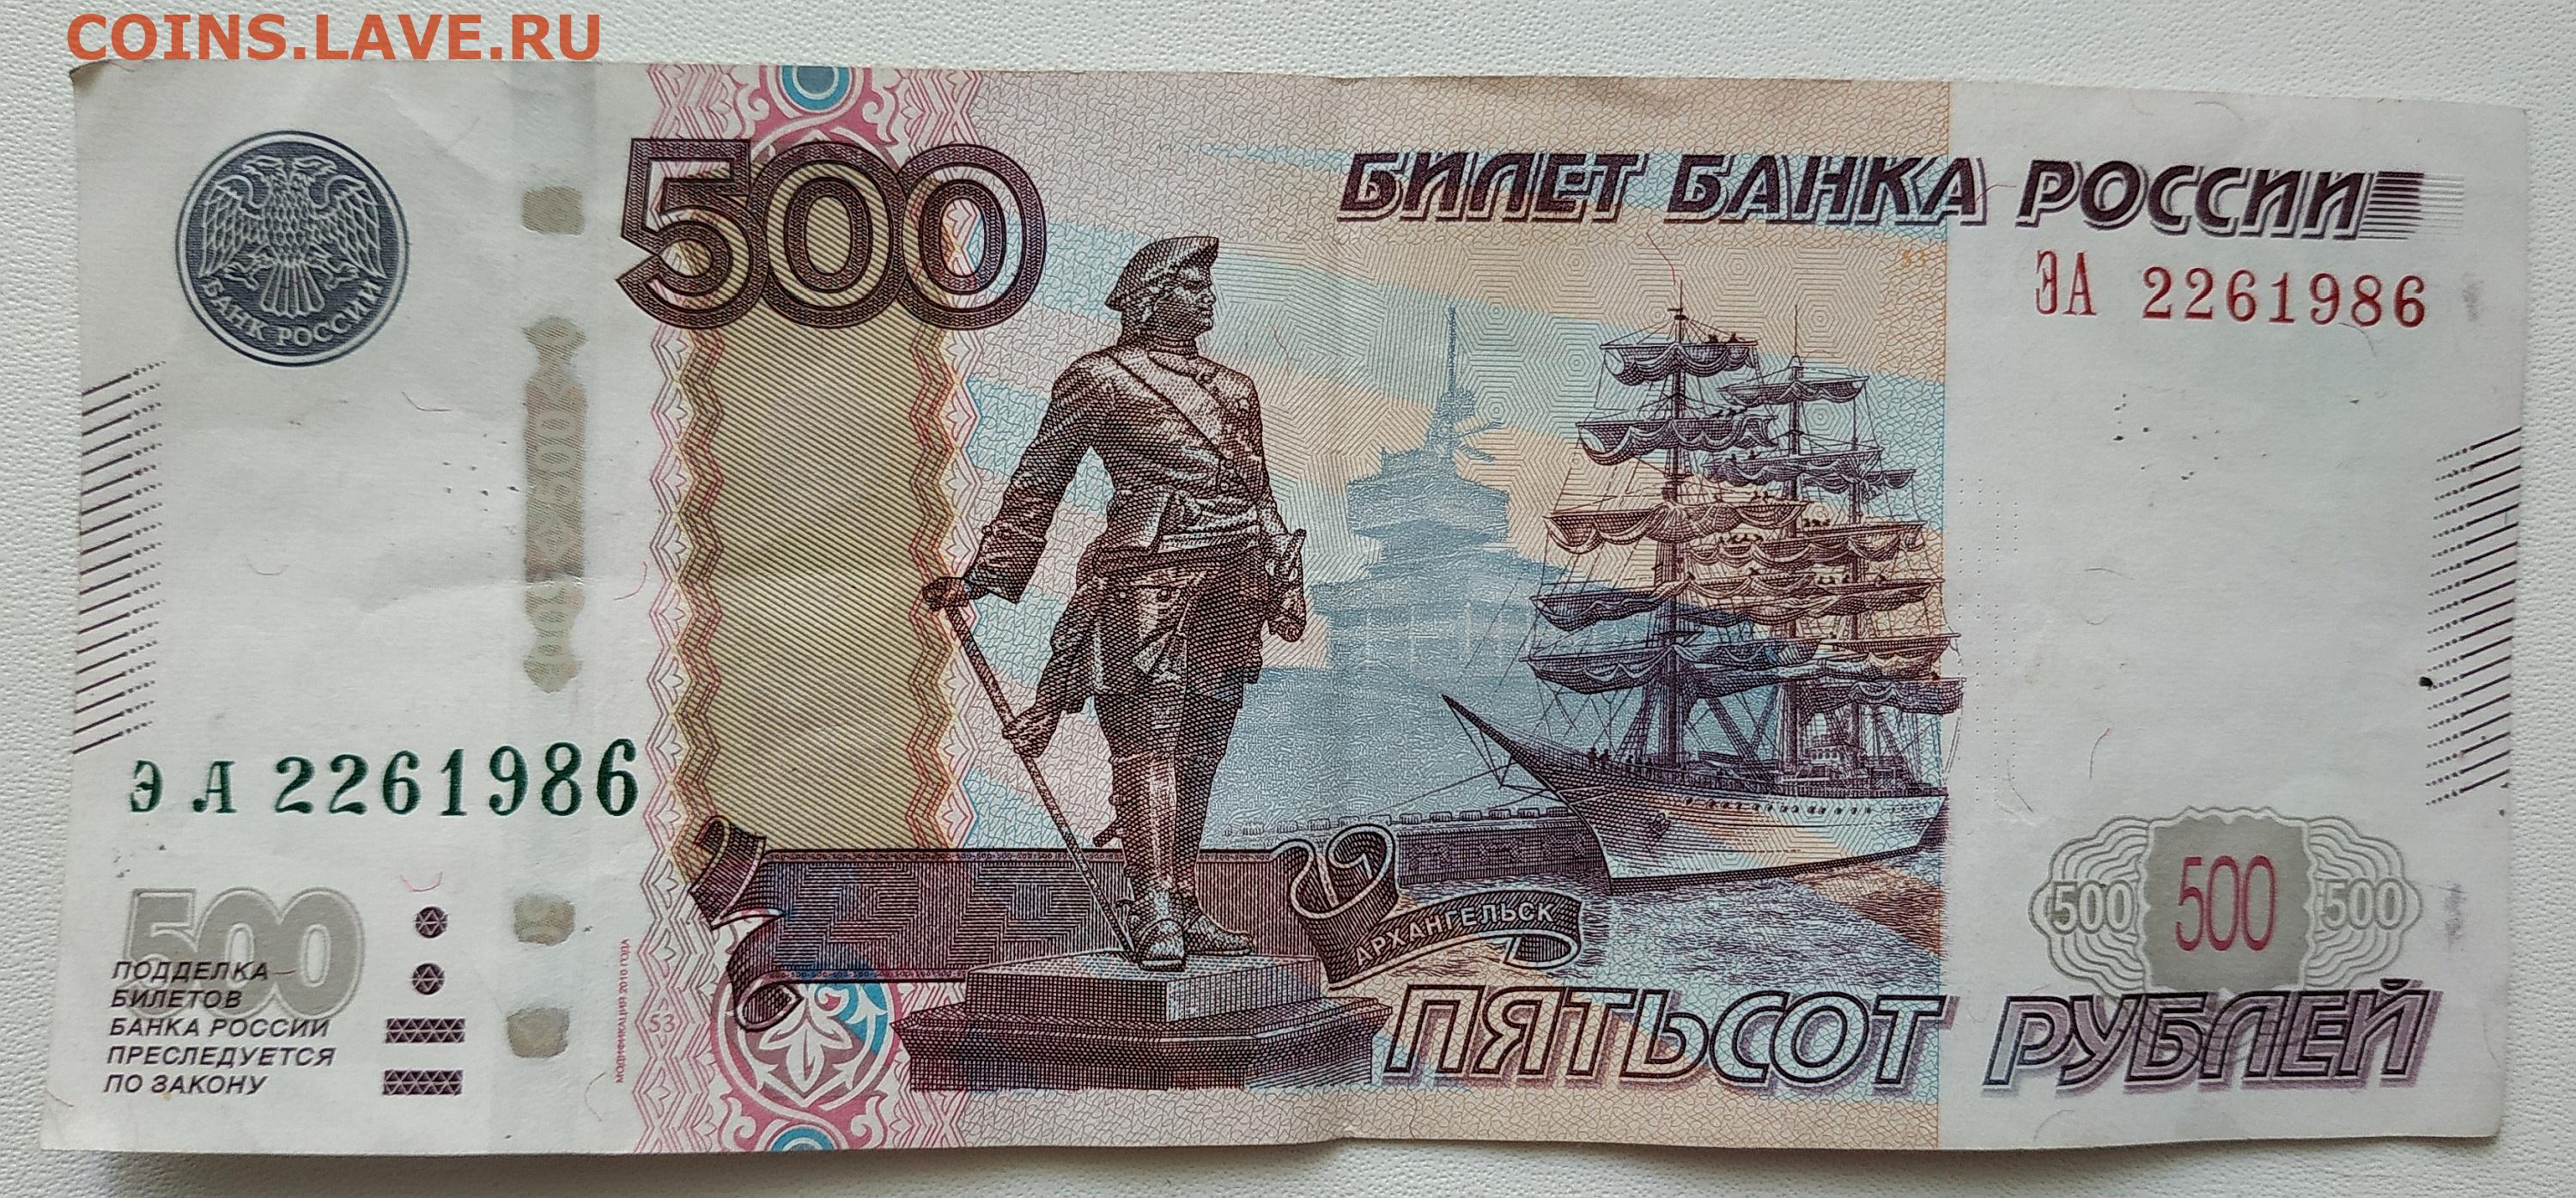 21 500 рублей. Купюра 500 рублей. 500 Рублей. 500 Рублей 1997 модификация 2010. 500 Рублей купюра для печати.